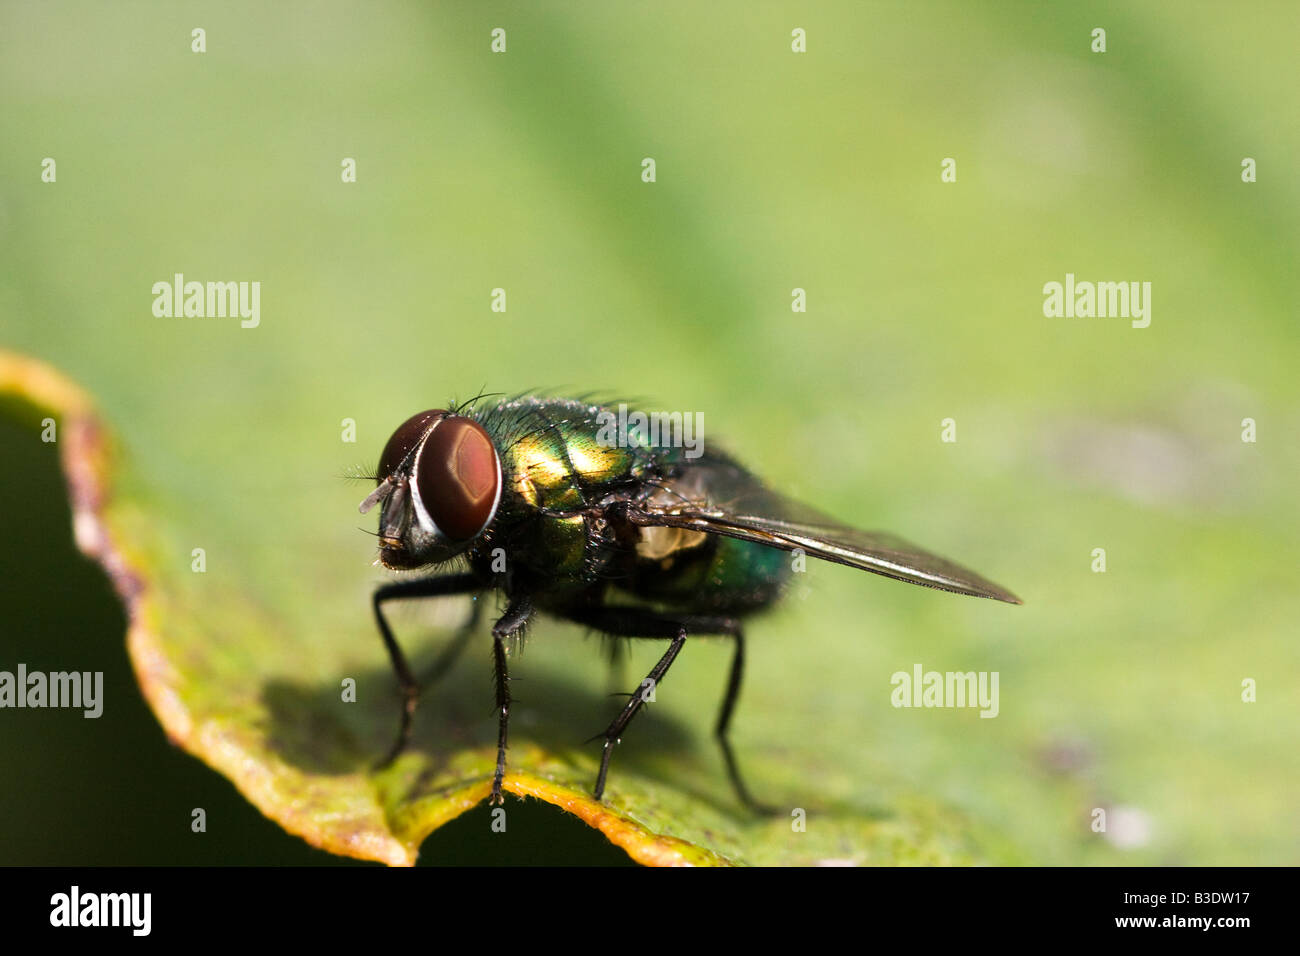 A closeup of a common green bottle fly Lucilia sericata Stock Photo